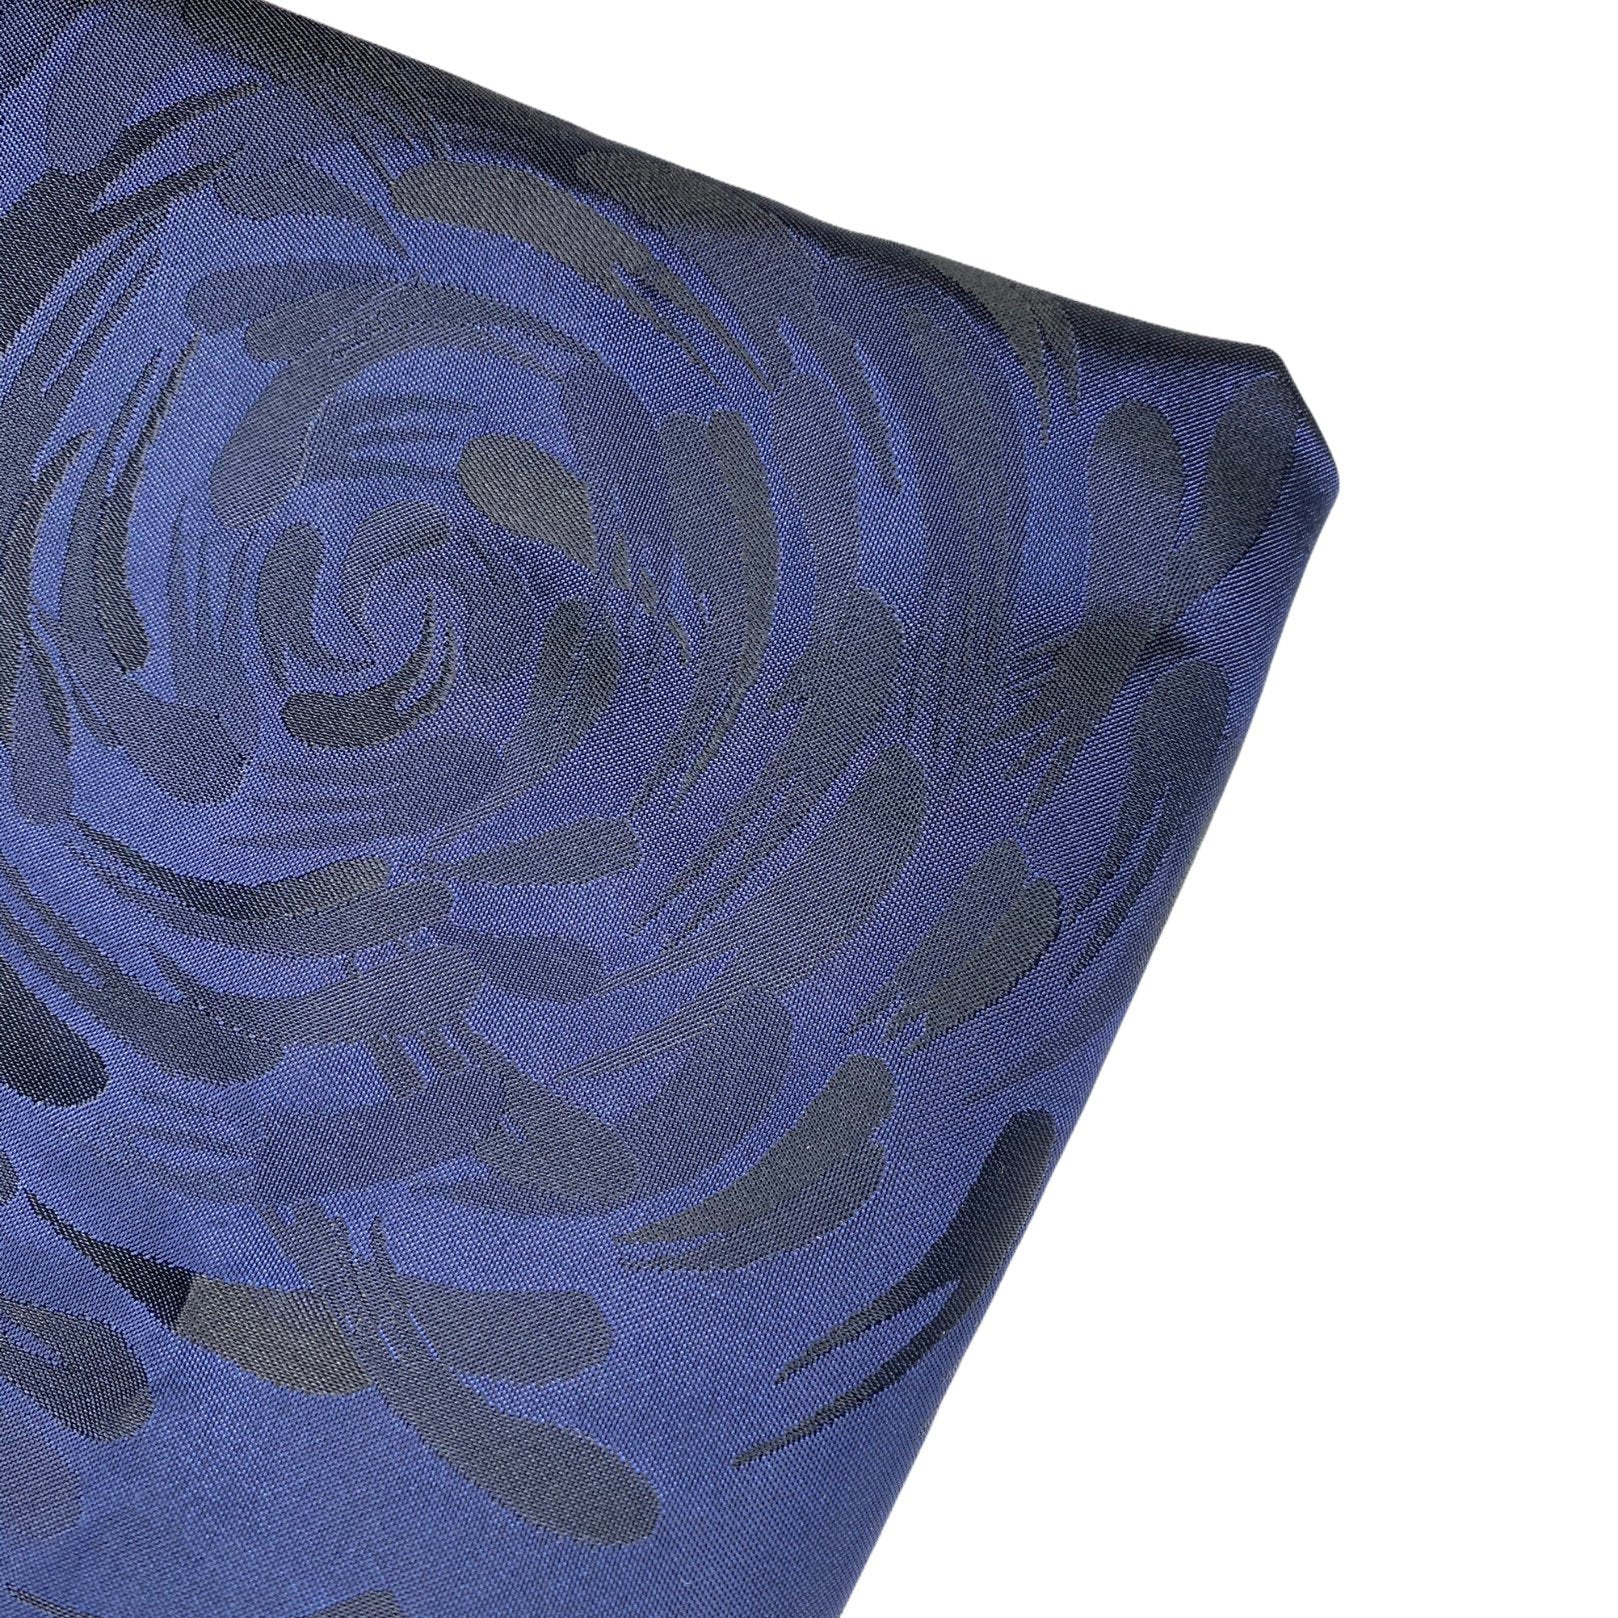 Floral Polyester Brocade - Blue/Black